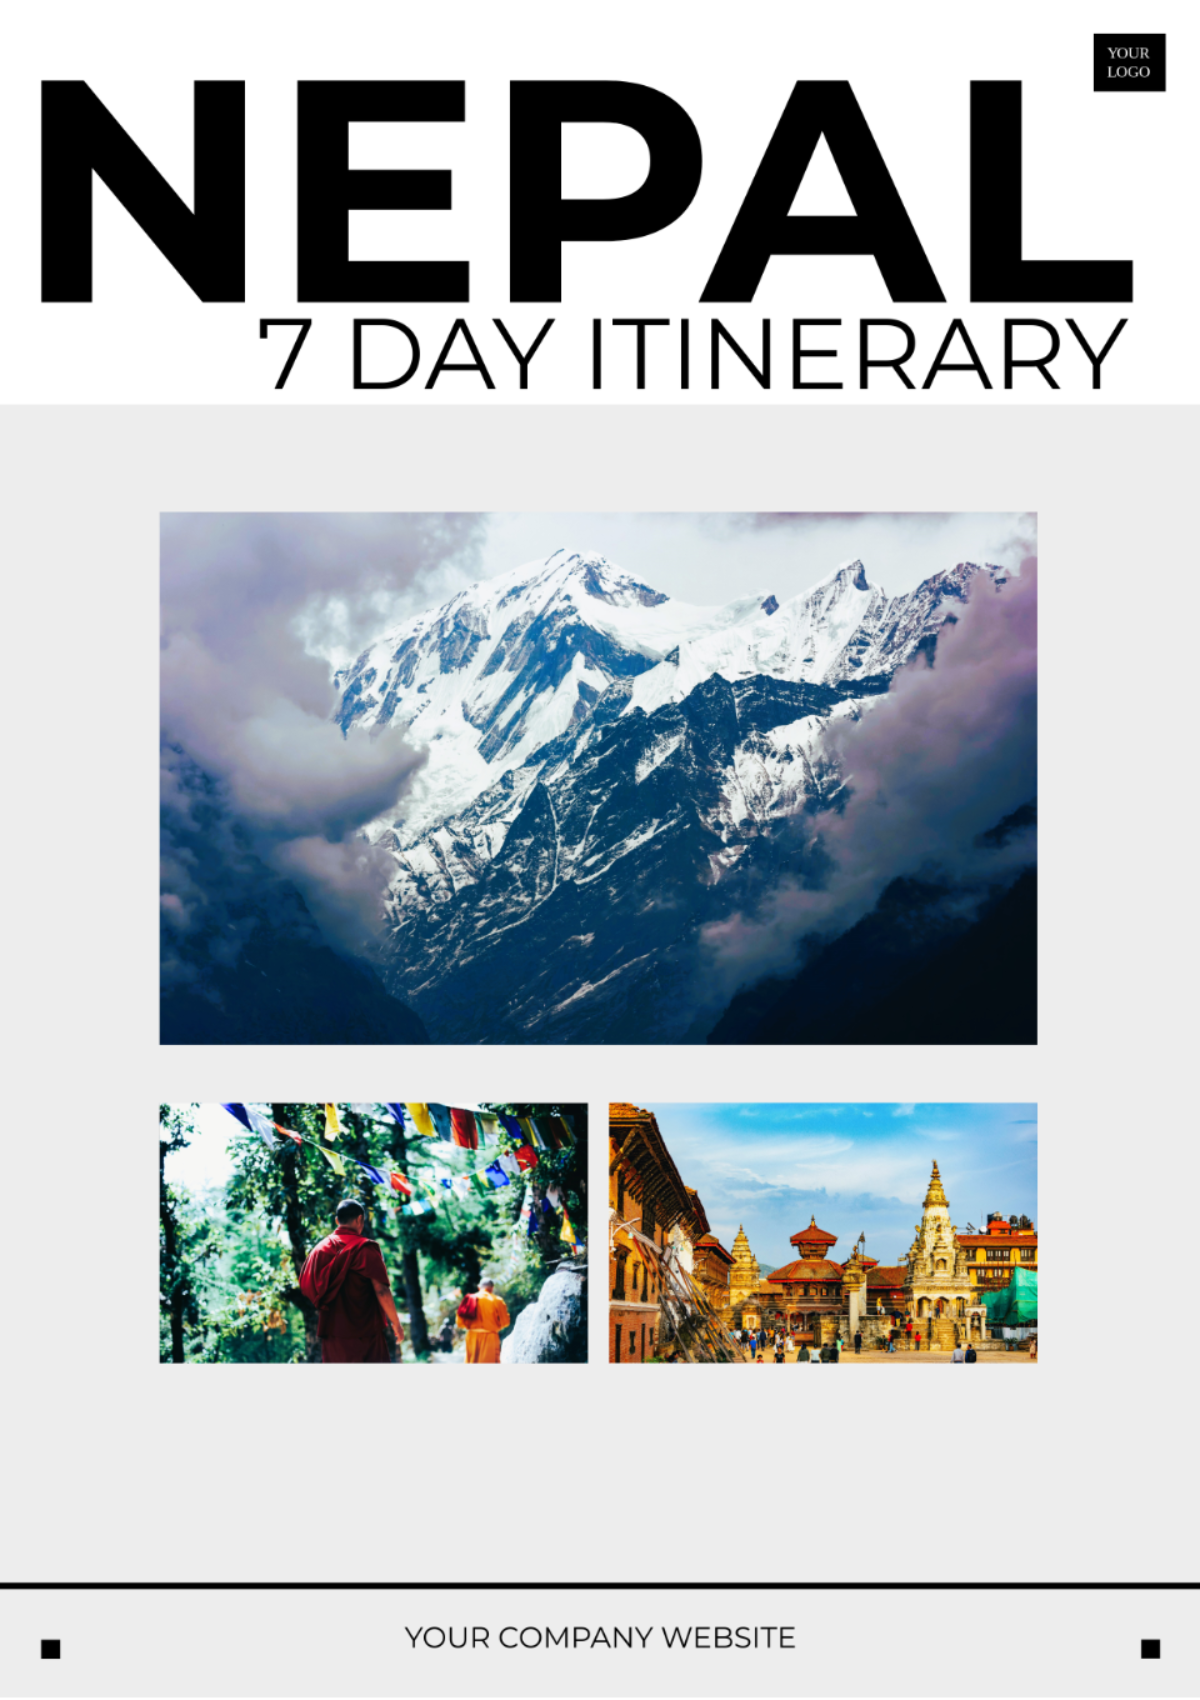 7 Day Nepal Itinerary Template